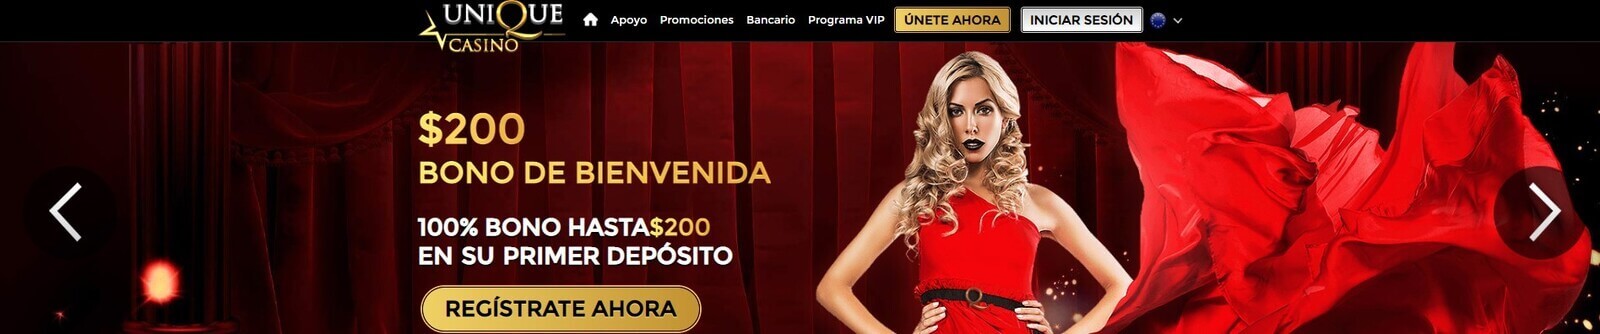 Página web de Unique Casino